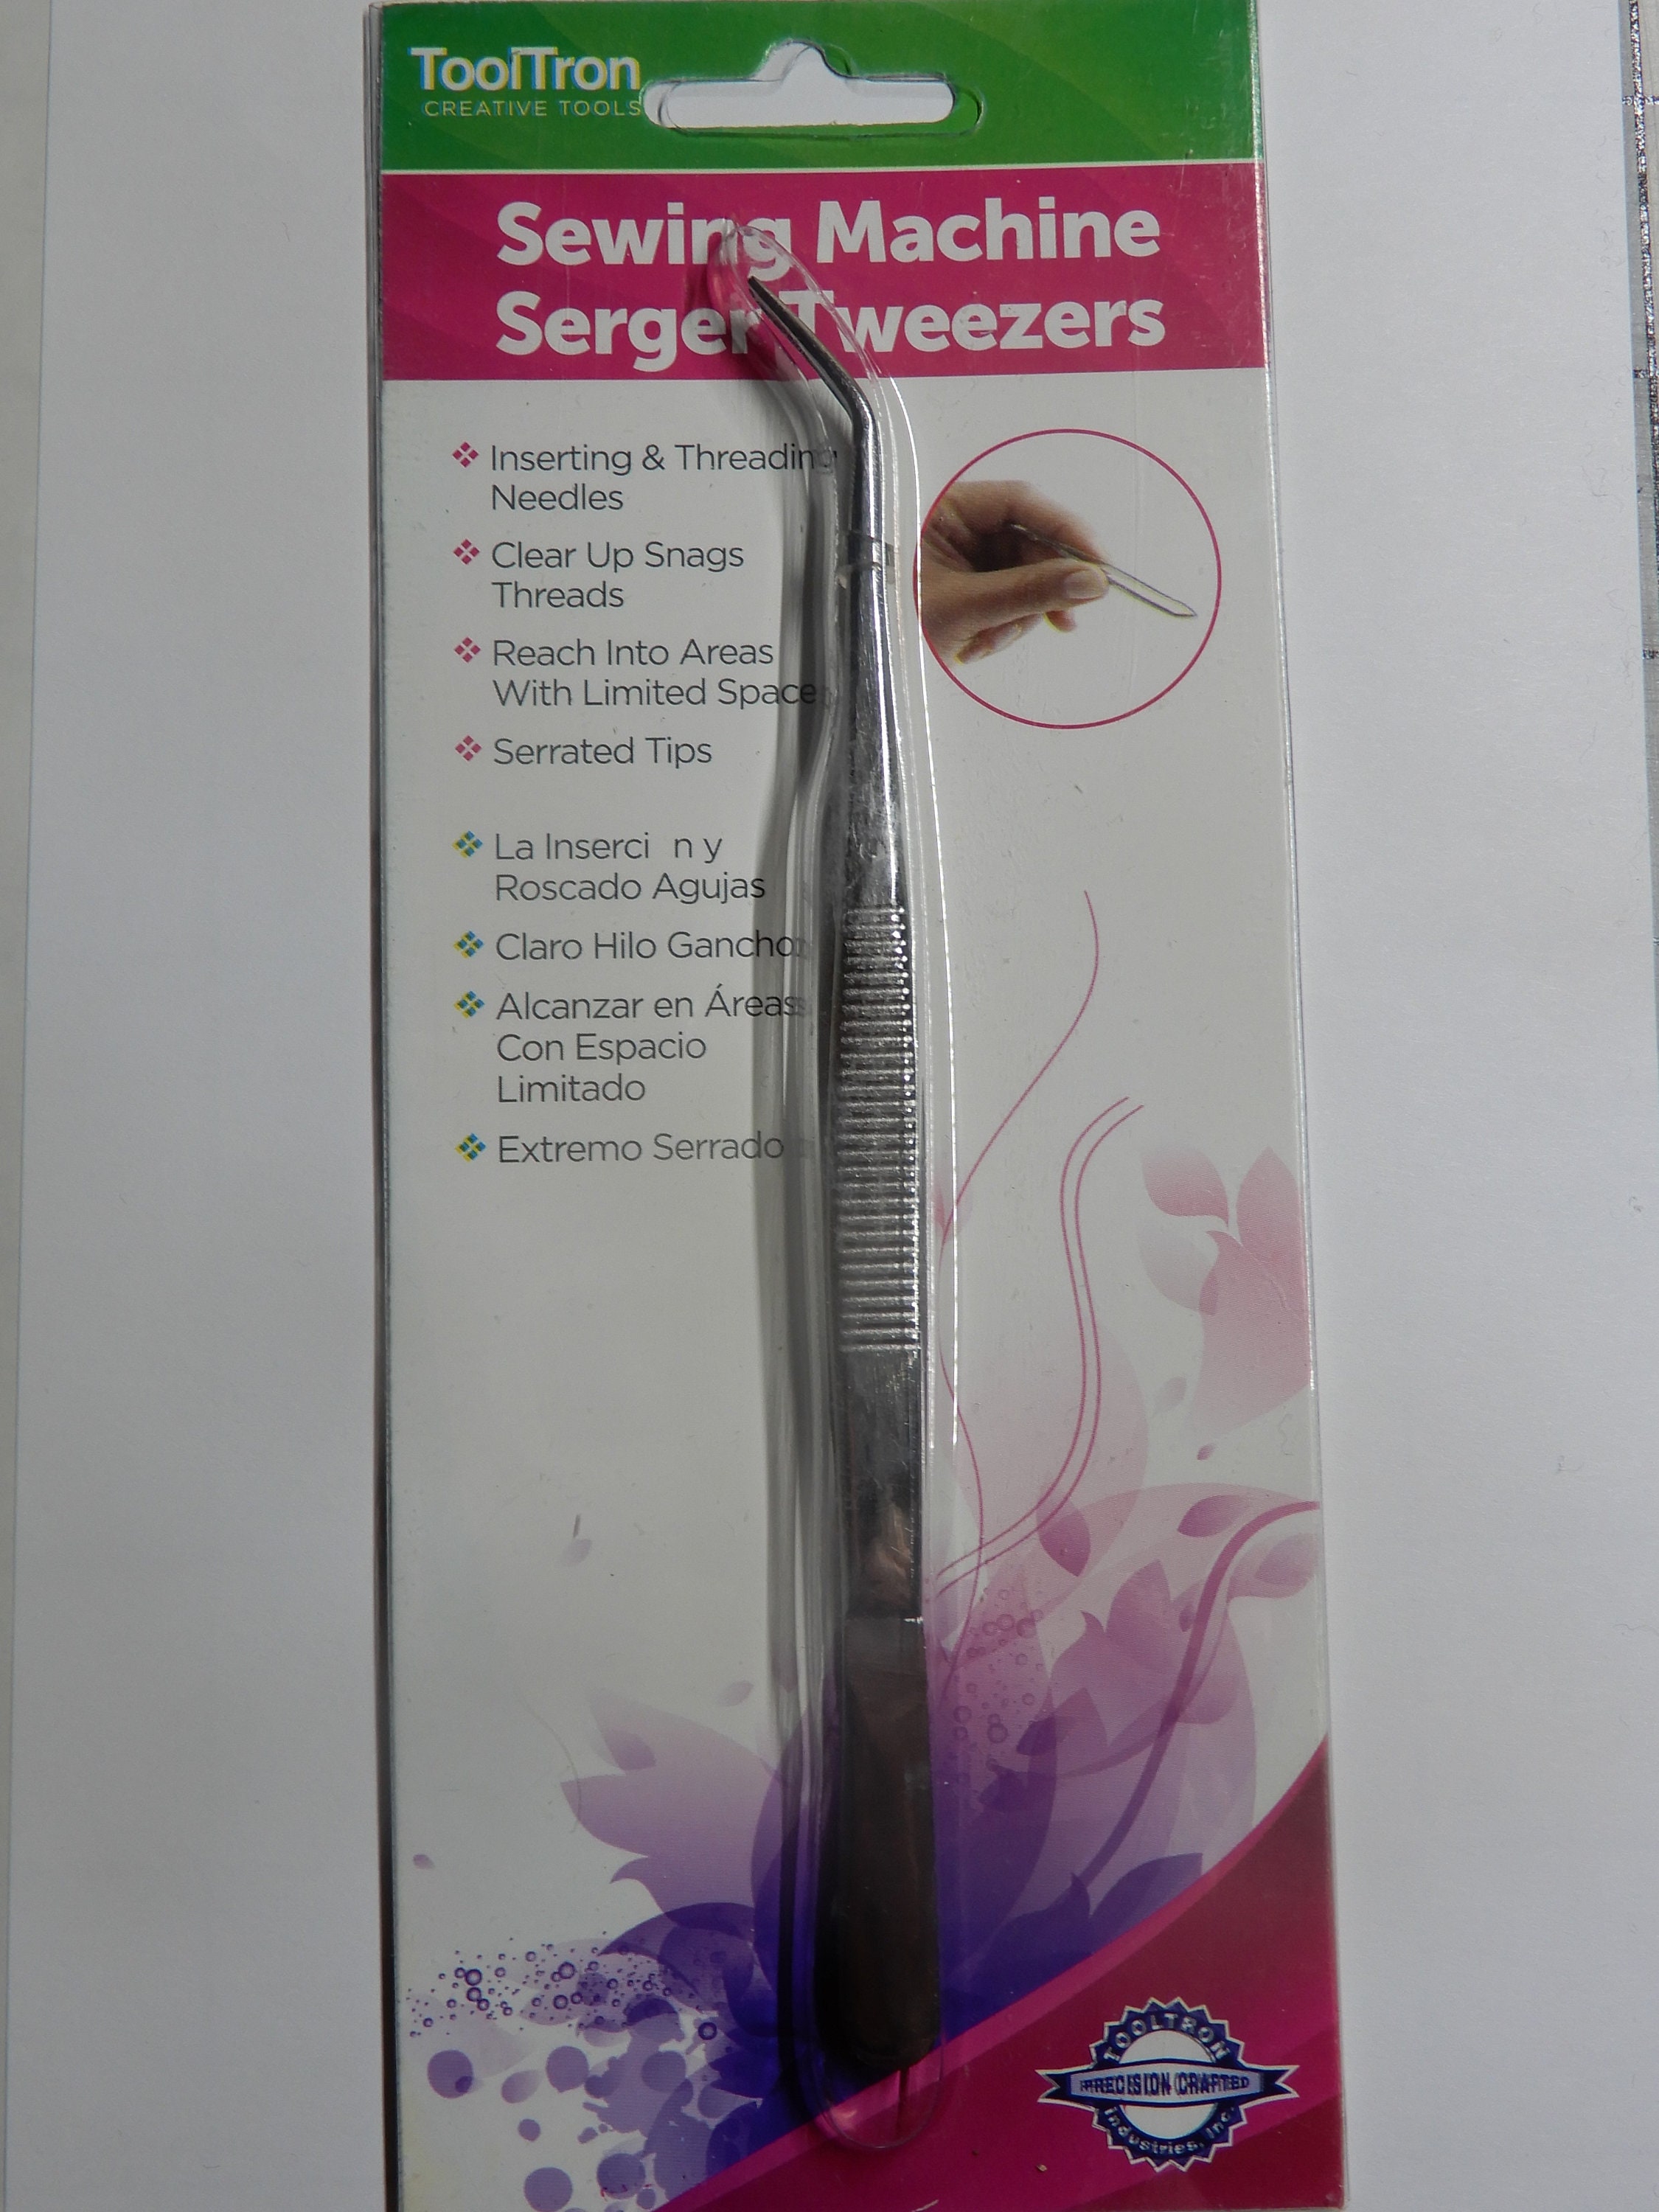 Sewing Tweezers, Serger Tweezers